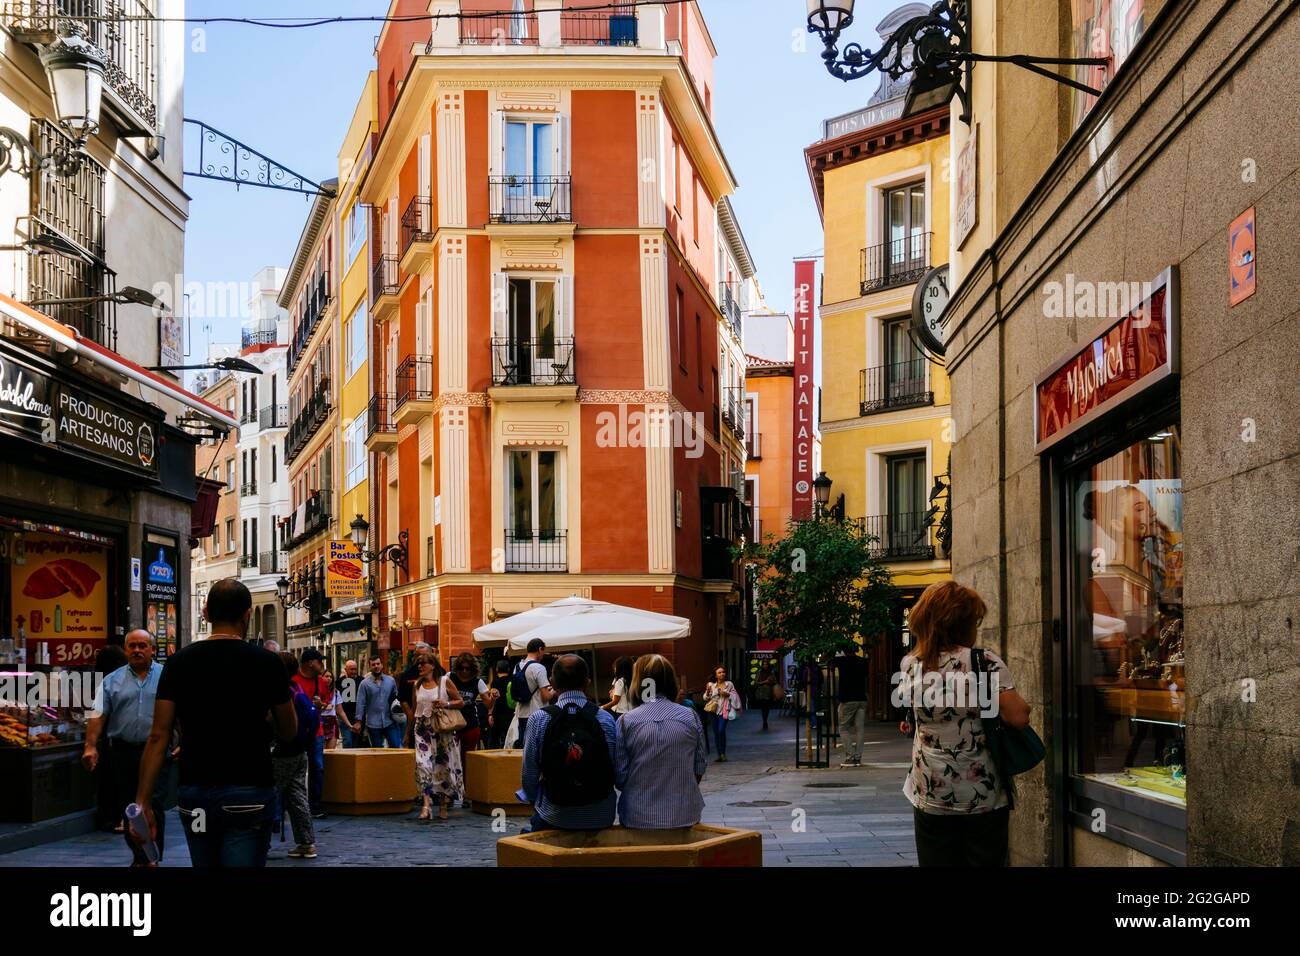 Ambiente callejero en la calle La Sal, alrededor de la Plaza Mayor - Plaza  Principal. Madrid, Comunidad de madrid, España, Europa Fotografía de stock  - Alamy